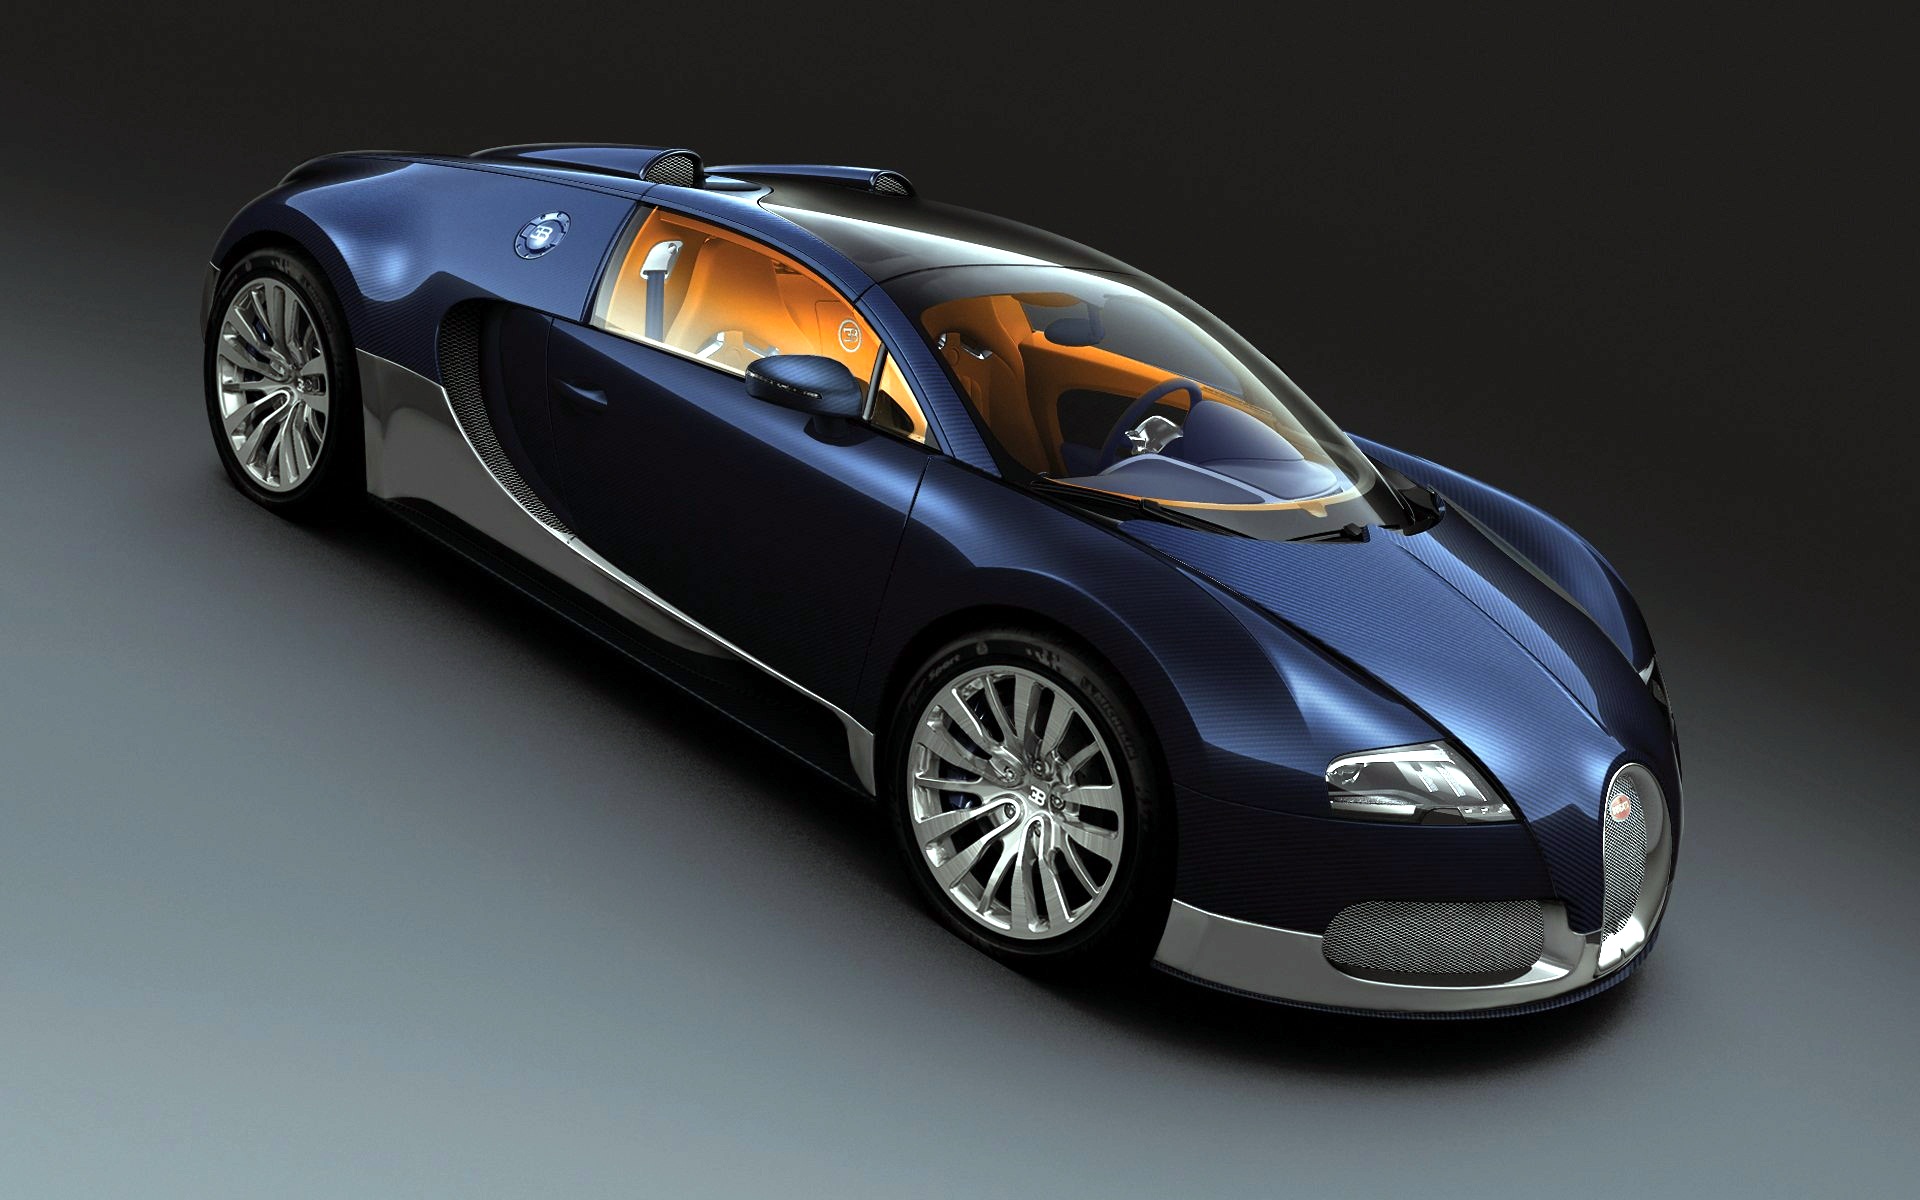 HD Bugatti Wallpaper For